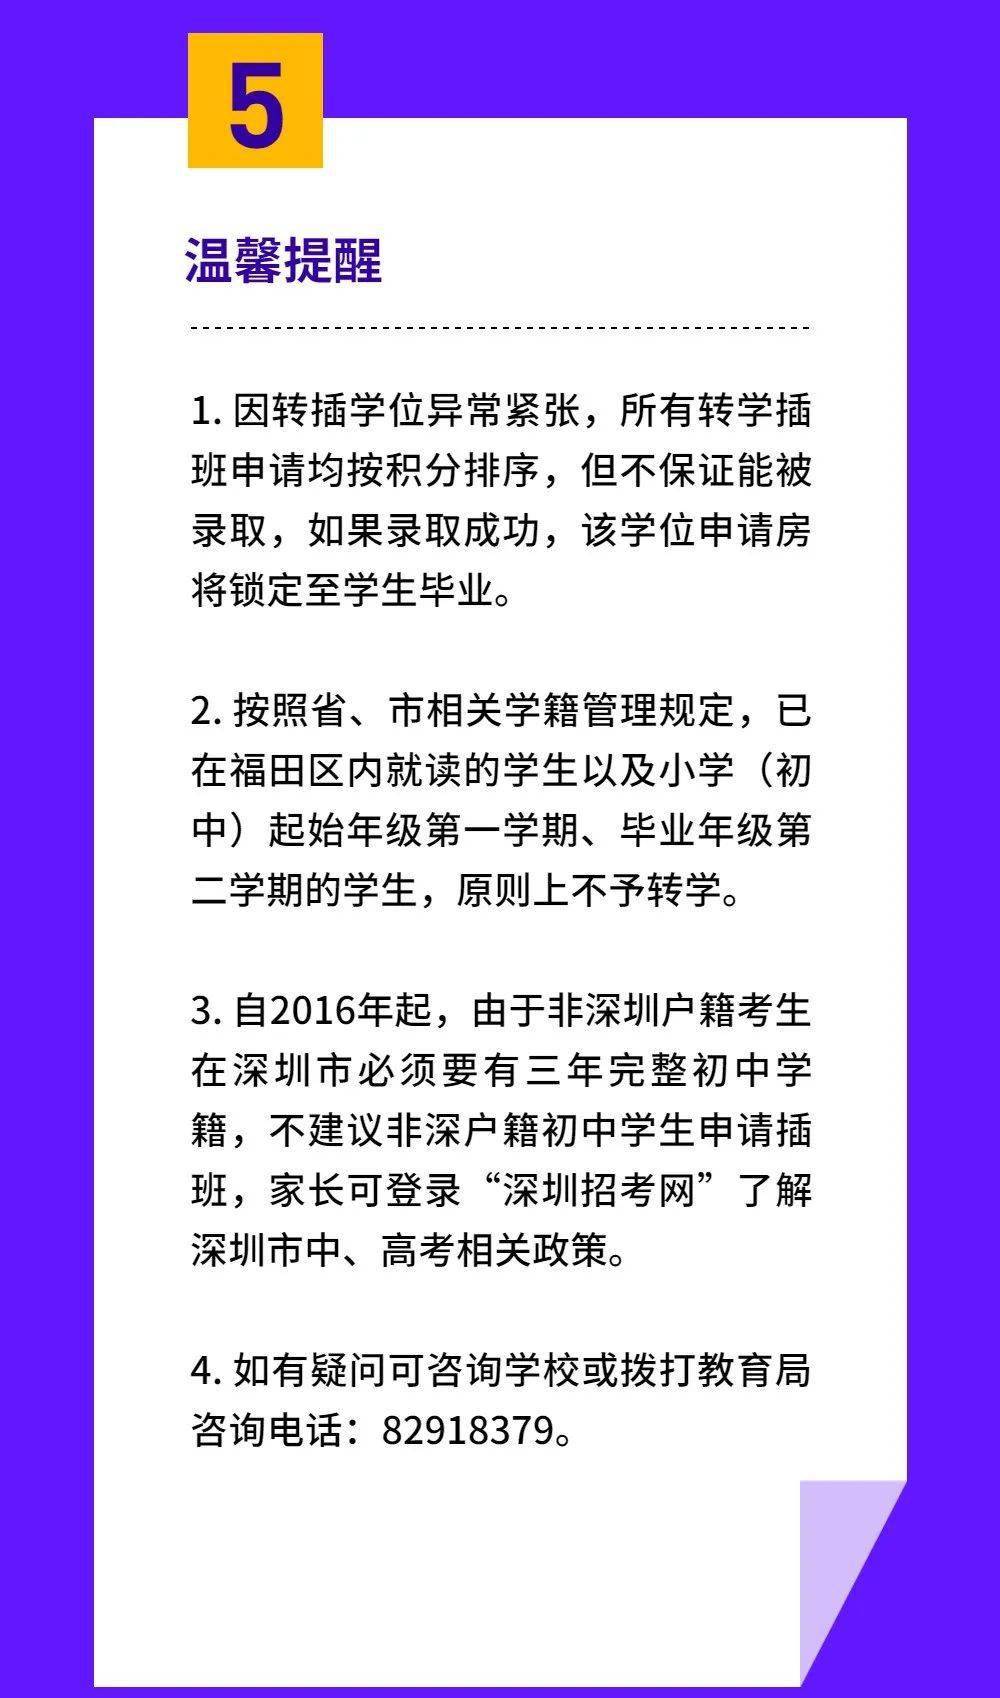 在深圳福田区寻找辩护律师的全面指南  第1张